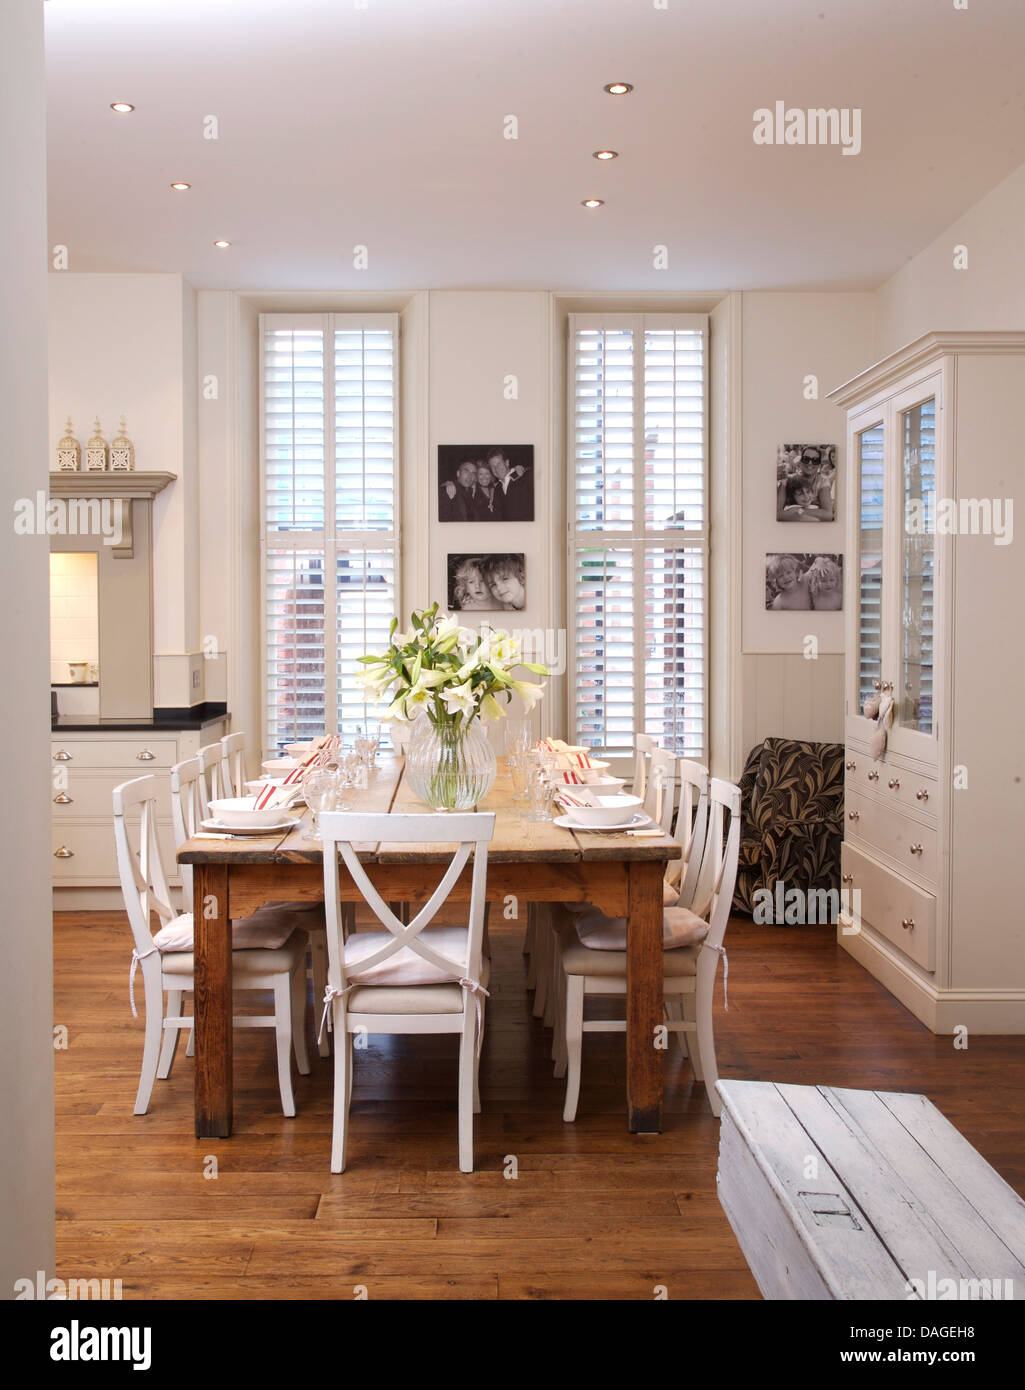 Sedie bianche in legno semplice tabella in bianca e moderna cucina sala da pranzo Camera con pavimento in legno bianco e persiane in stile piantagione Foto Stock